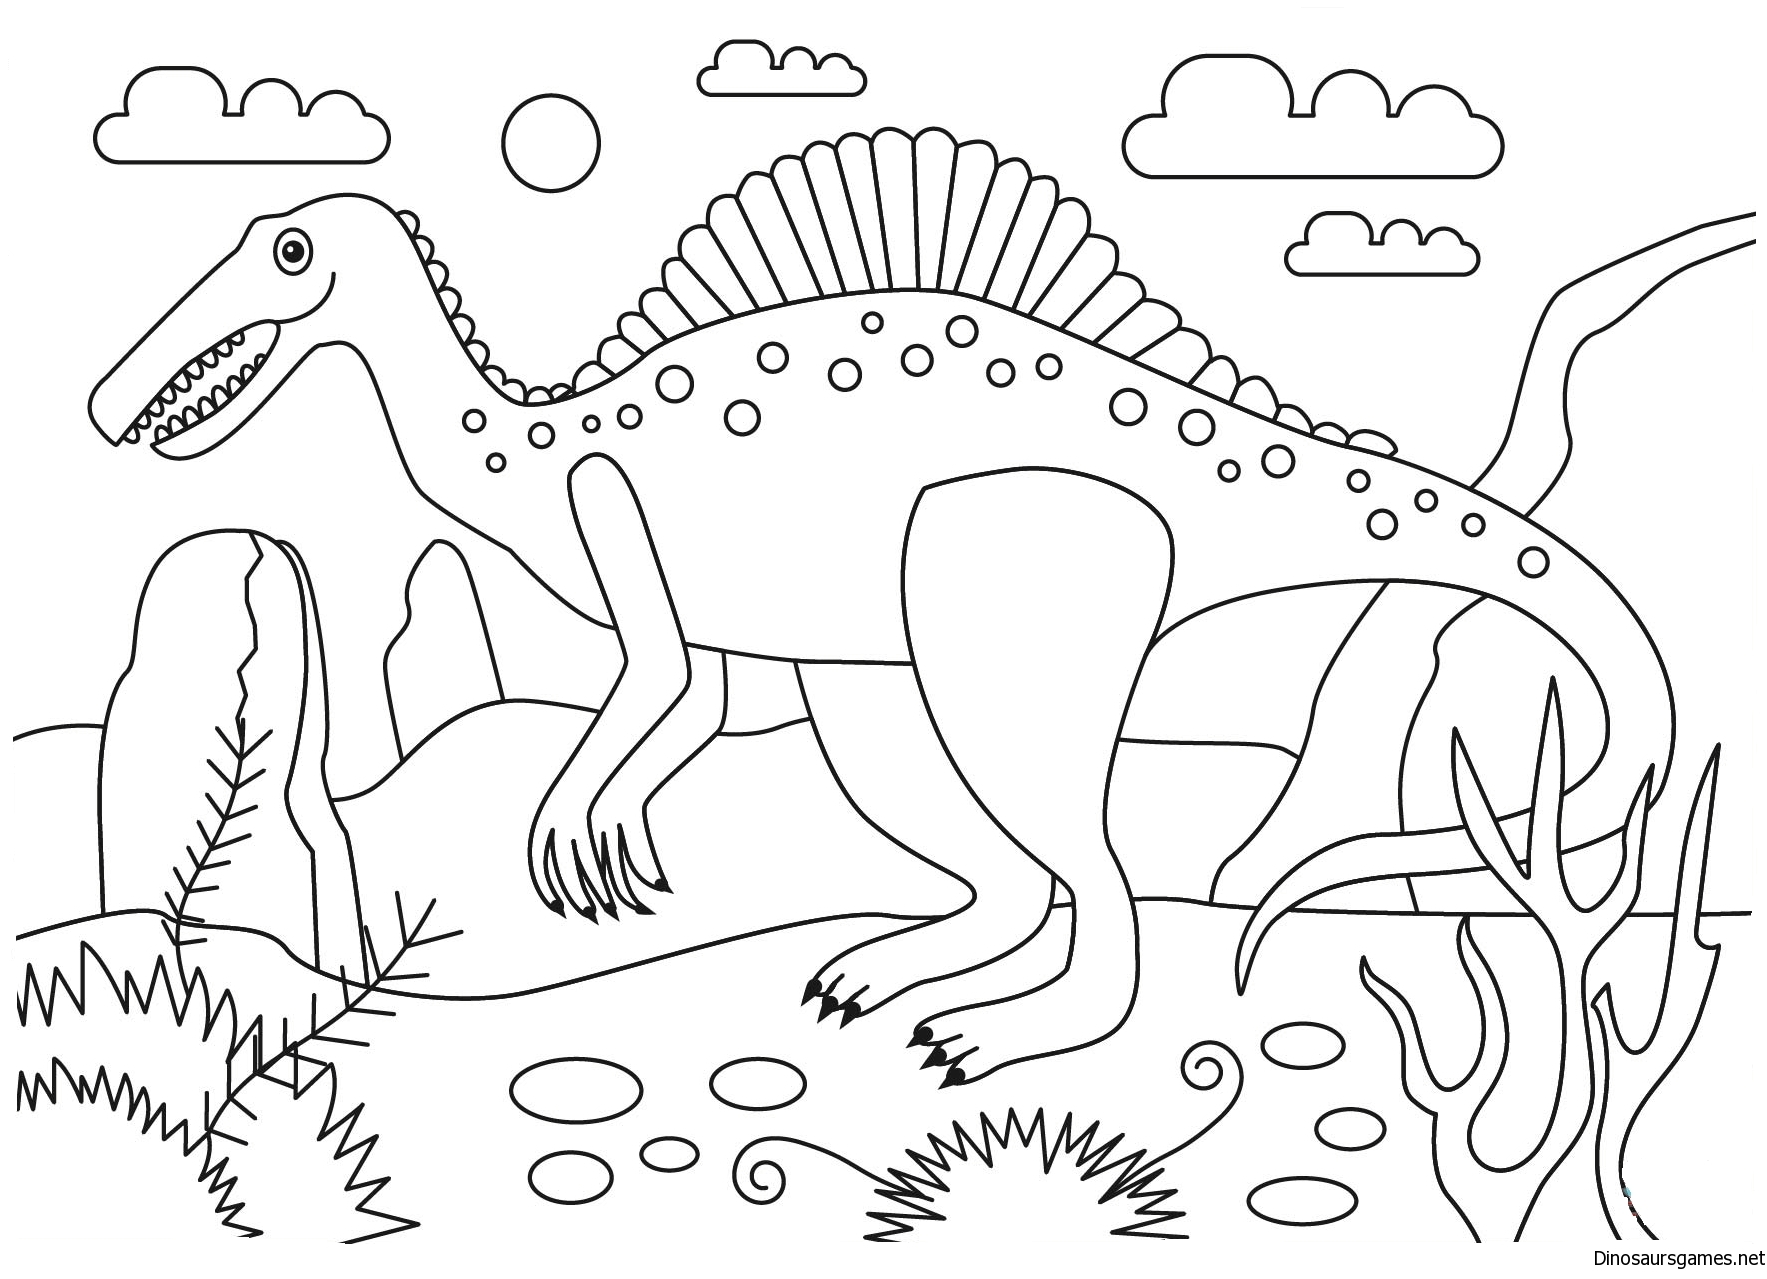 Раскраска динозавр формат а4. Спинозавр раскраска. Динозавры / раскраска. Динозавр раскраска для детей. Динозавры для раскрашивания детям.